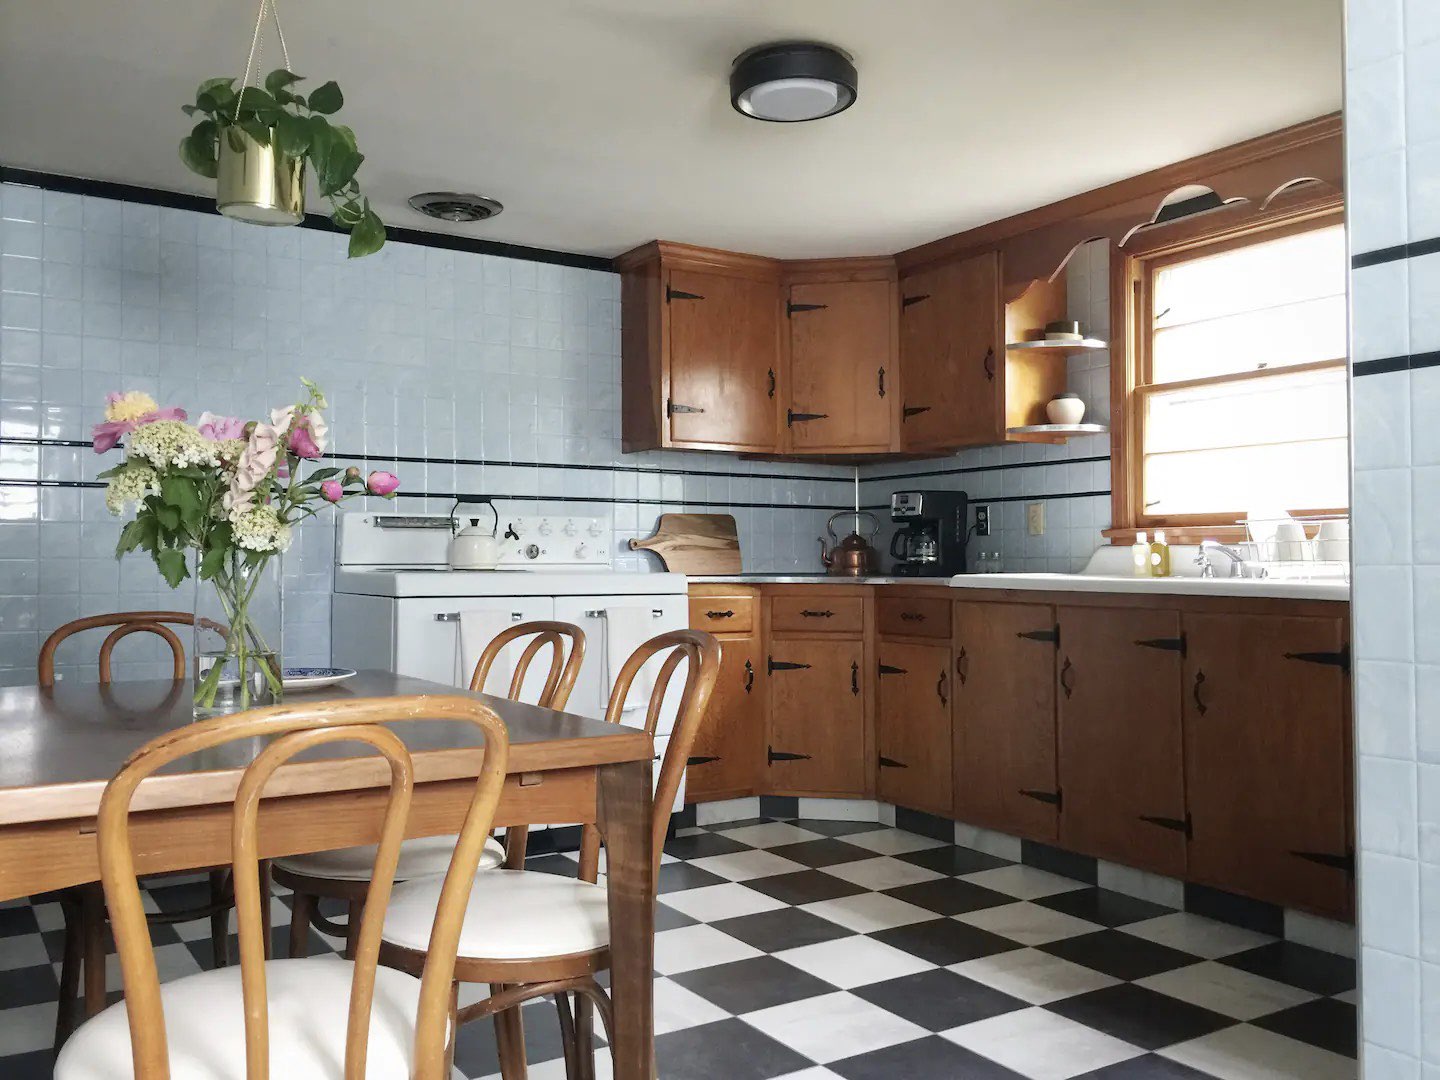 visite deco appartement mid century modern cuisine vintage cuisinière en métal rétro blanche meuble en bois linéaire coin repas